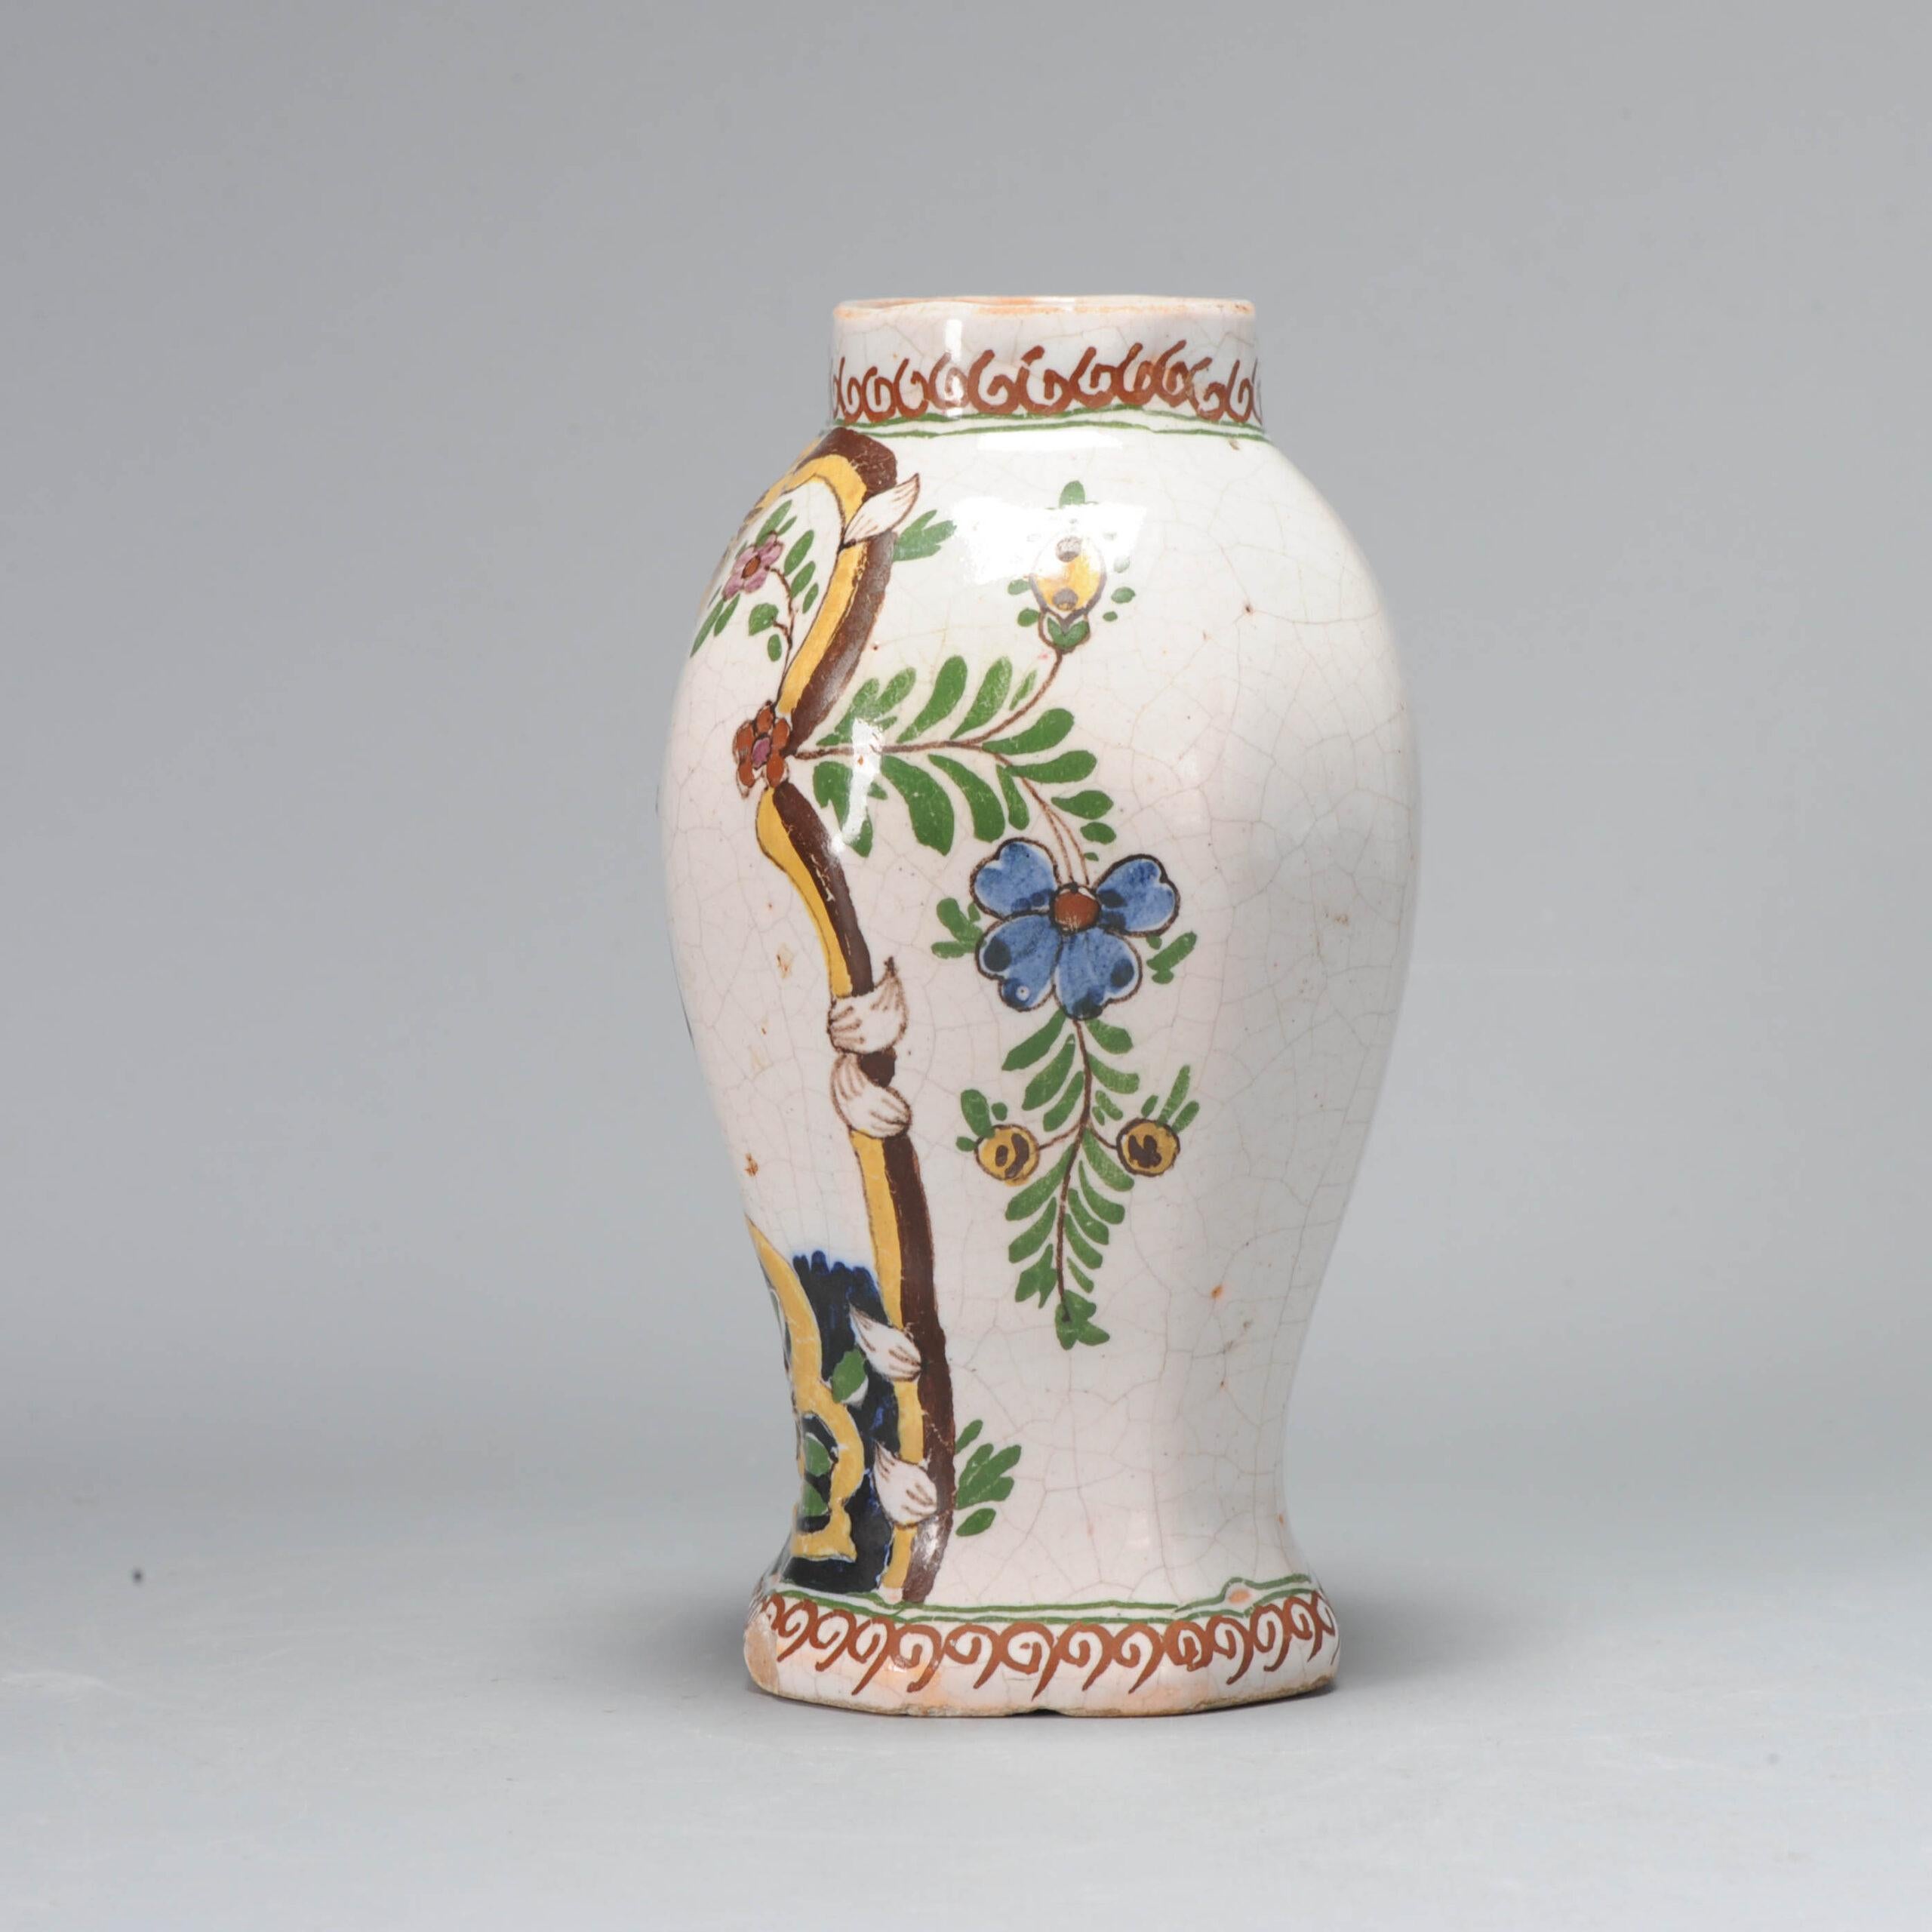 Diese schöne Vase/Glas aus den Niederlanden, Delft, Fabrik De Porceleyne Claeuw, 1658-1840.

Ein Baum mit 